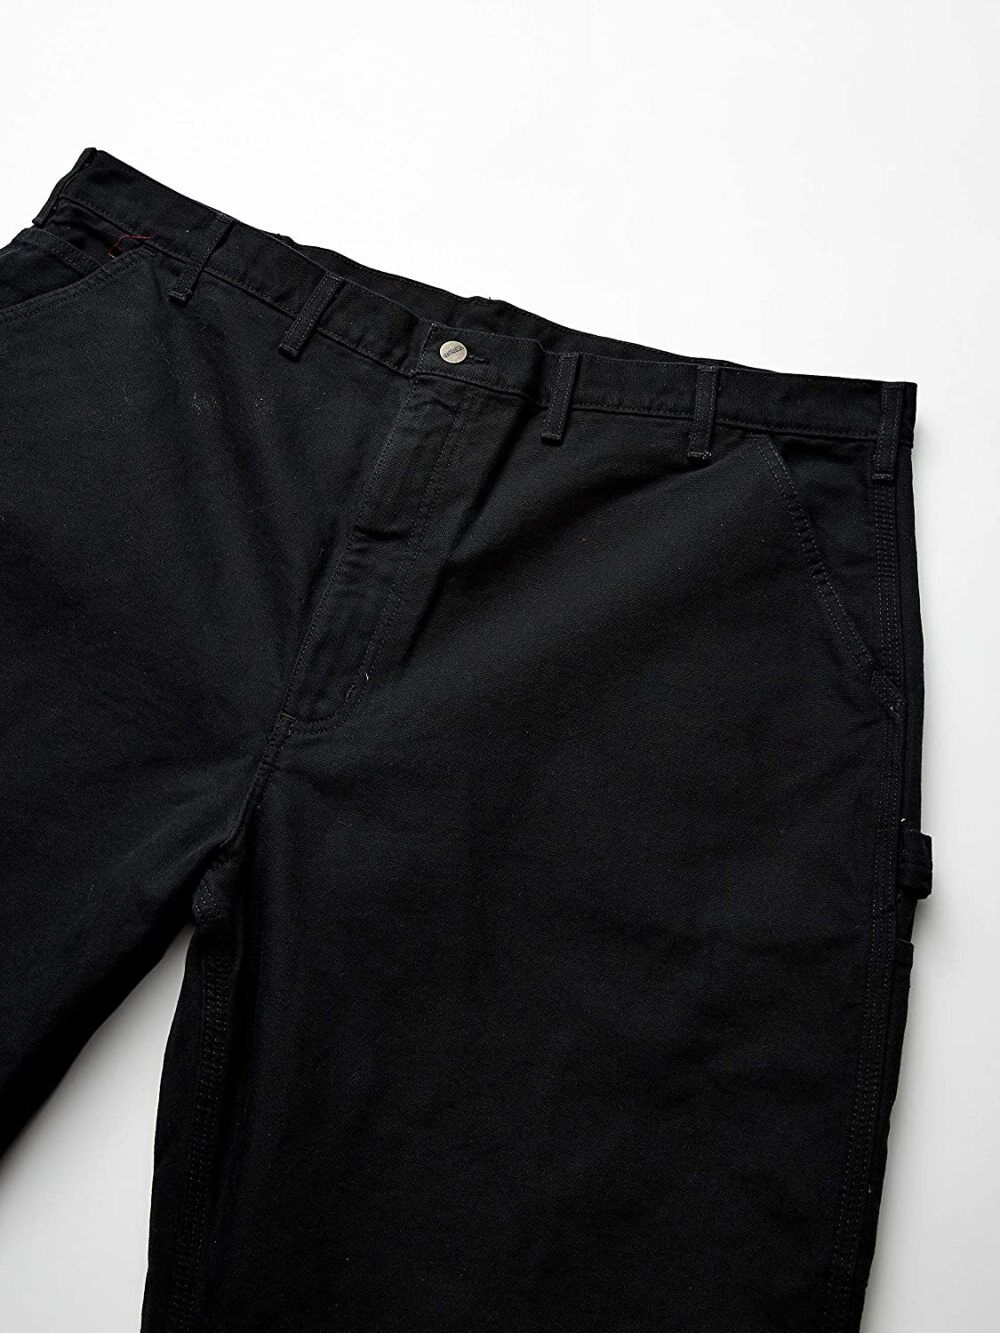 Carhartt Men's Duck Dungaree Flannel Lined 33x30 Black Work Pants